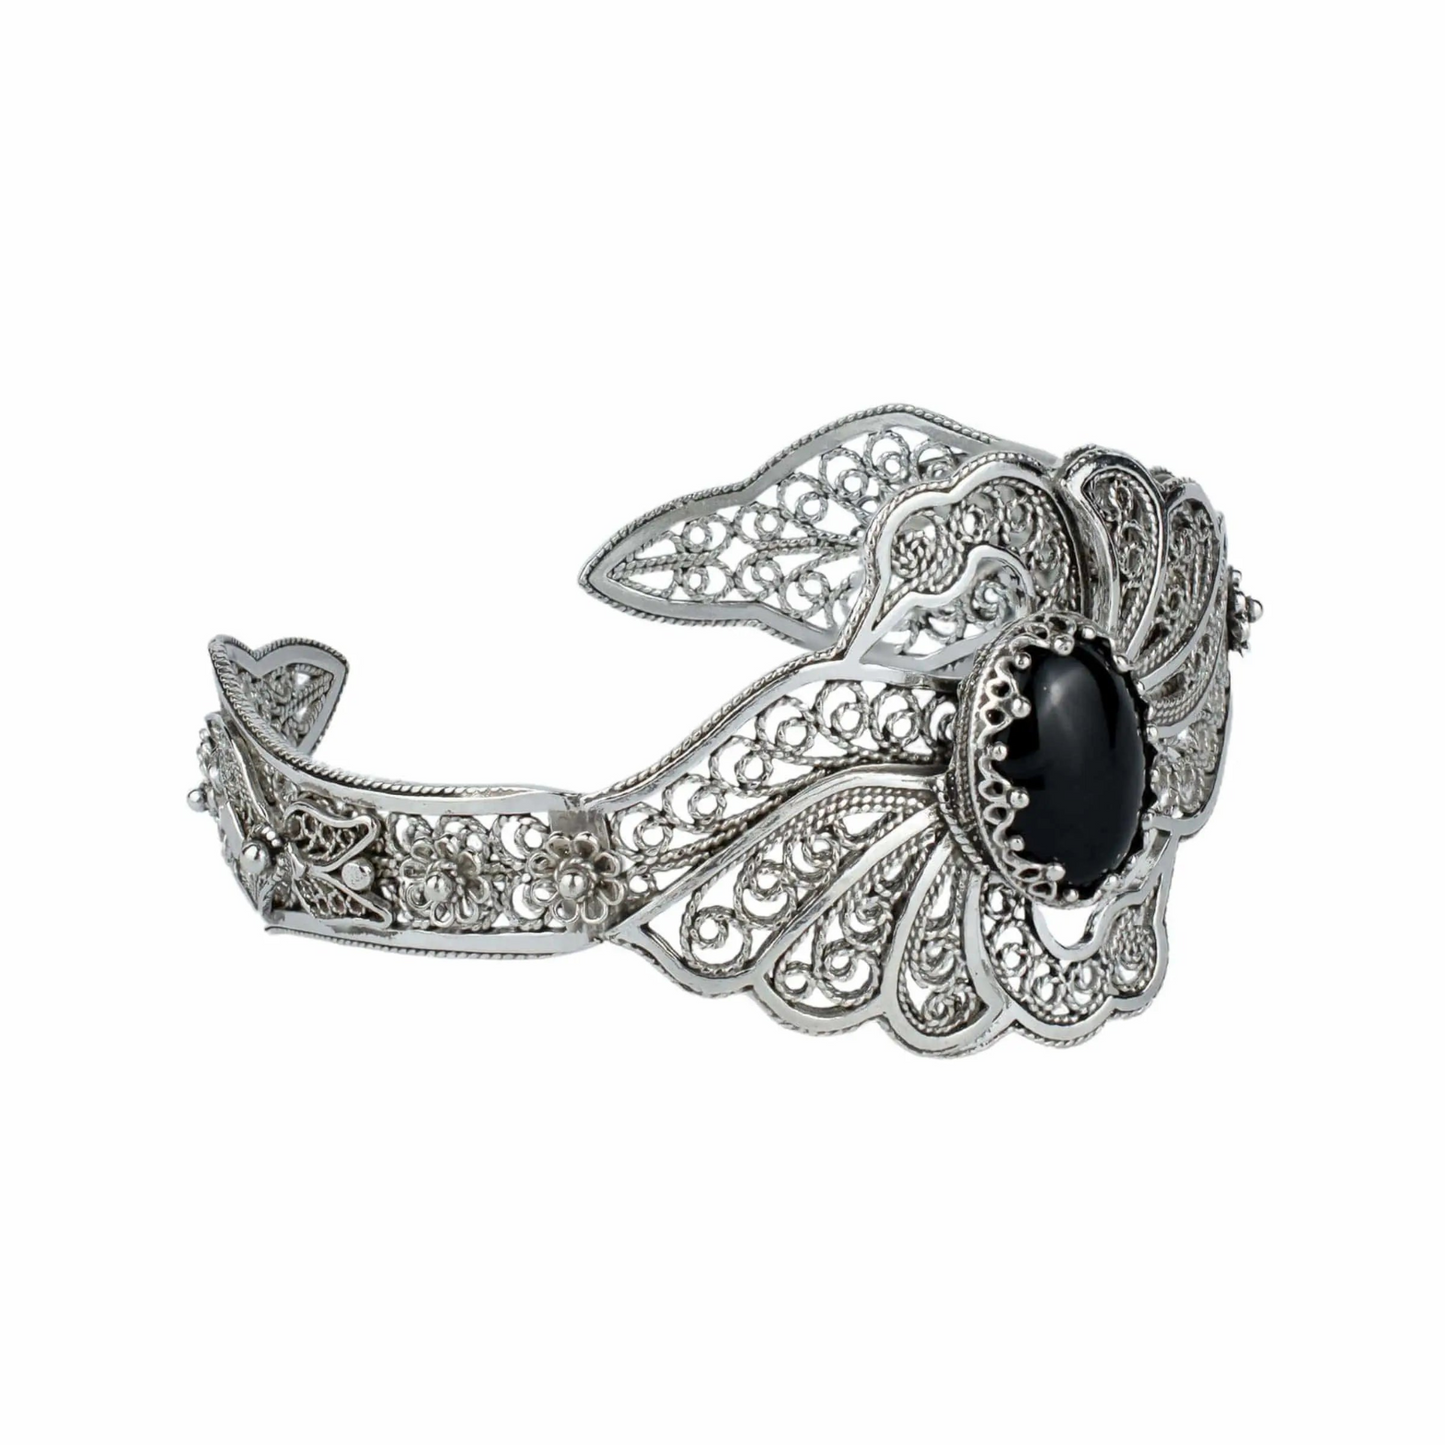 Filigree Art Black Onyx Gemstone Double Swan Figured Women Silver Cuff Bracelet